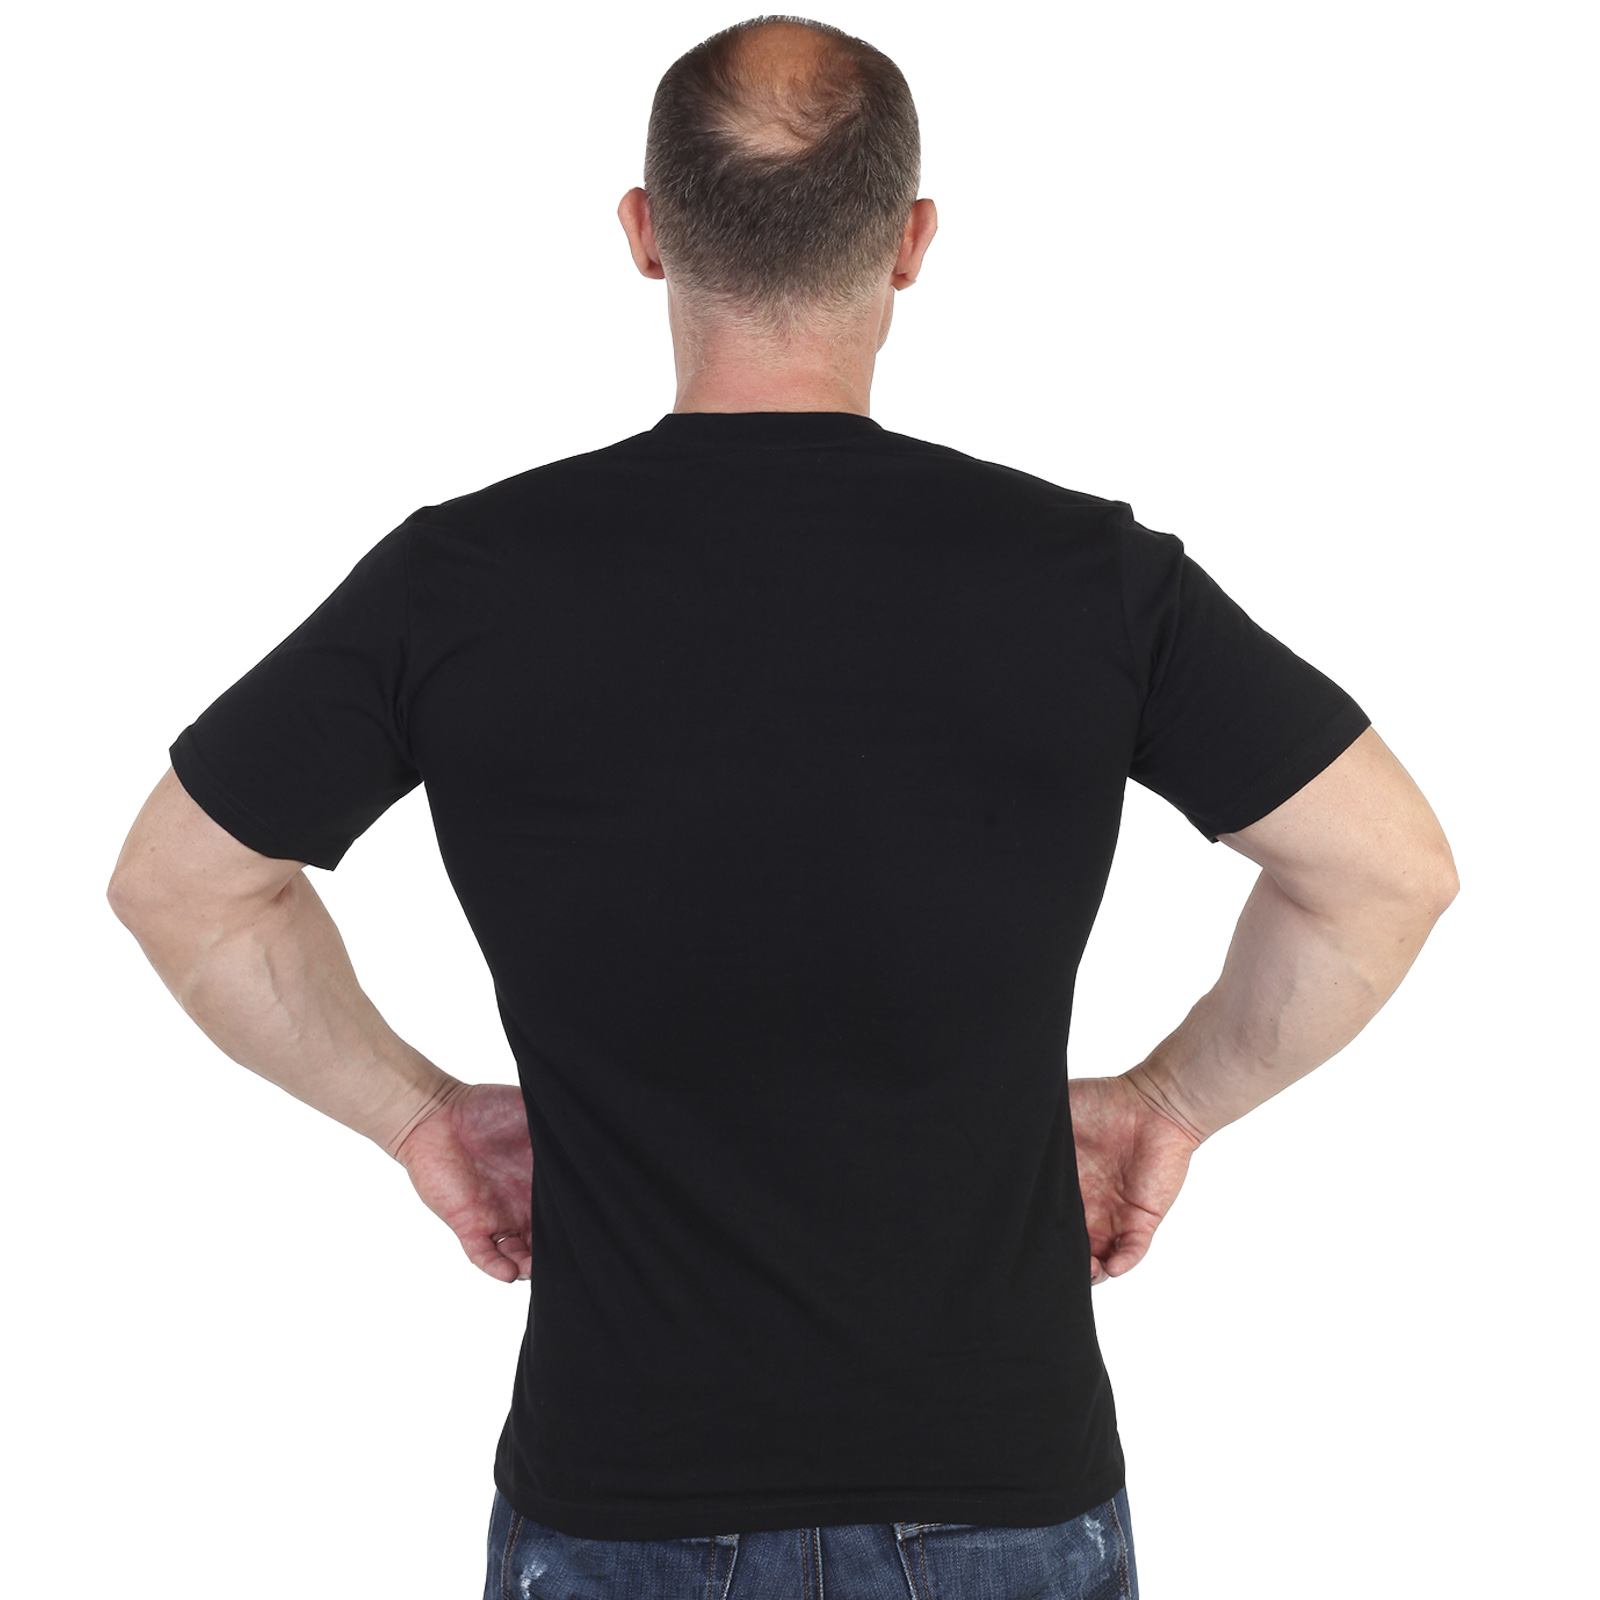 Купить мужскую футболку черного цвета в интернете